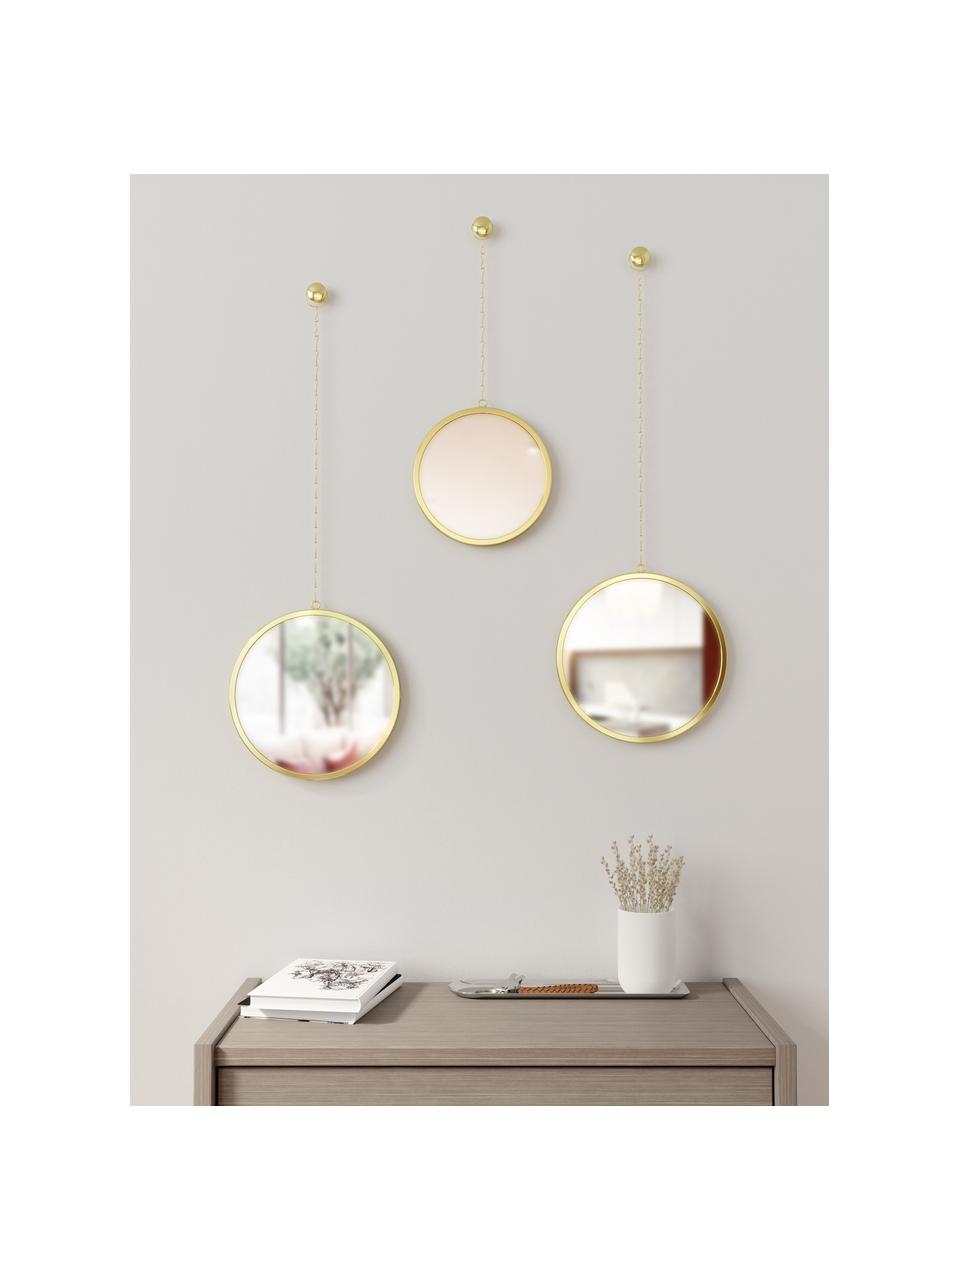 Rundes Wandspiegel-Set Dima mit goldfarbenem Metallrahmen, 3-tlg., Rahmen: Metall, beschichtet, Spiegelfläche: Spiegelglas, Goldfarben, Set mit verschiedenen Größen